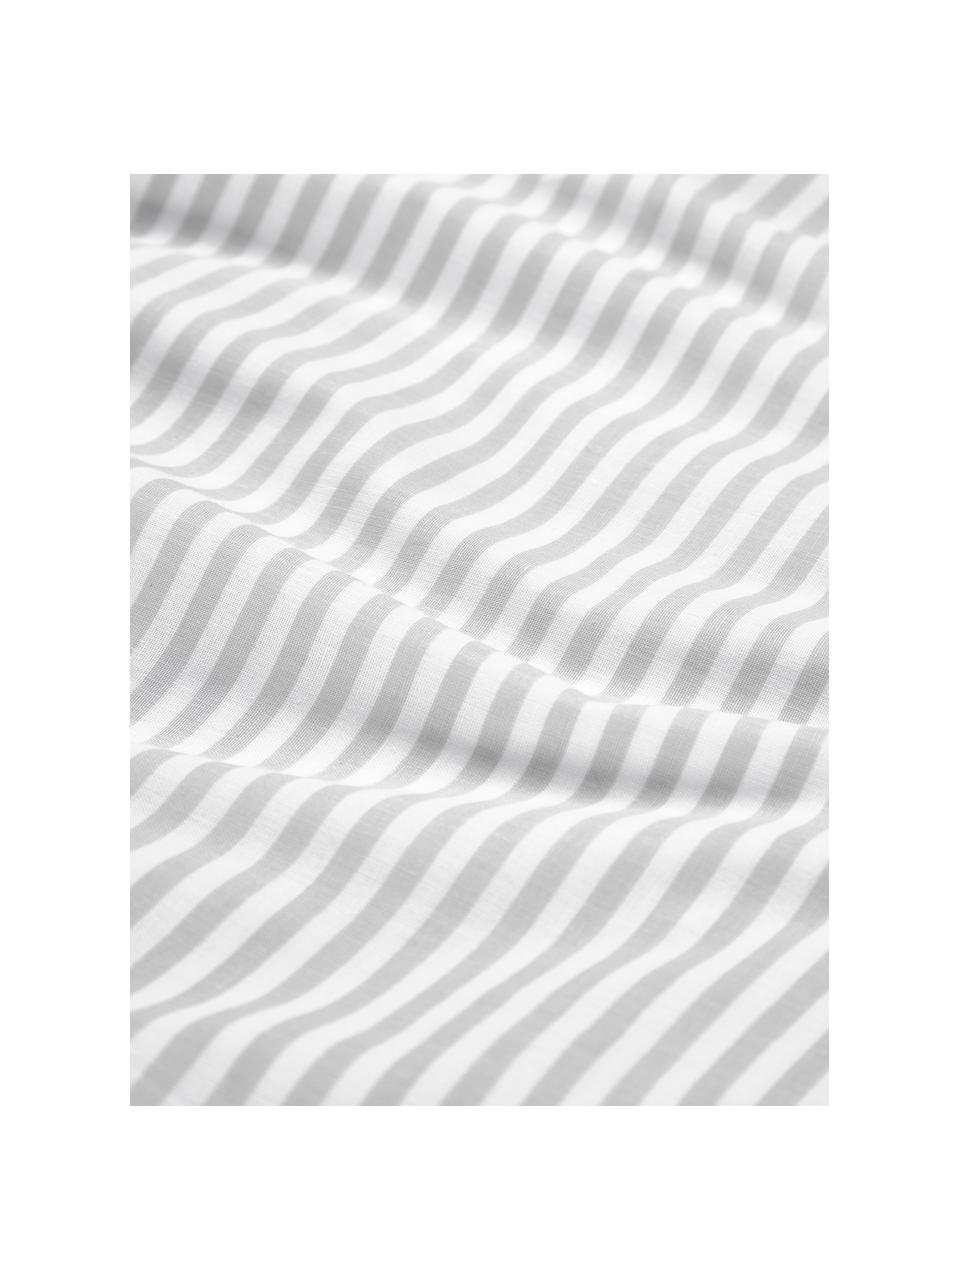 Housse de couette réversible en coton à rayures Lorena, Gris clair, blanc, larg. 200 x long. 200 cm